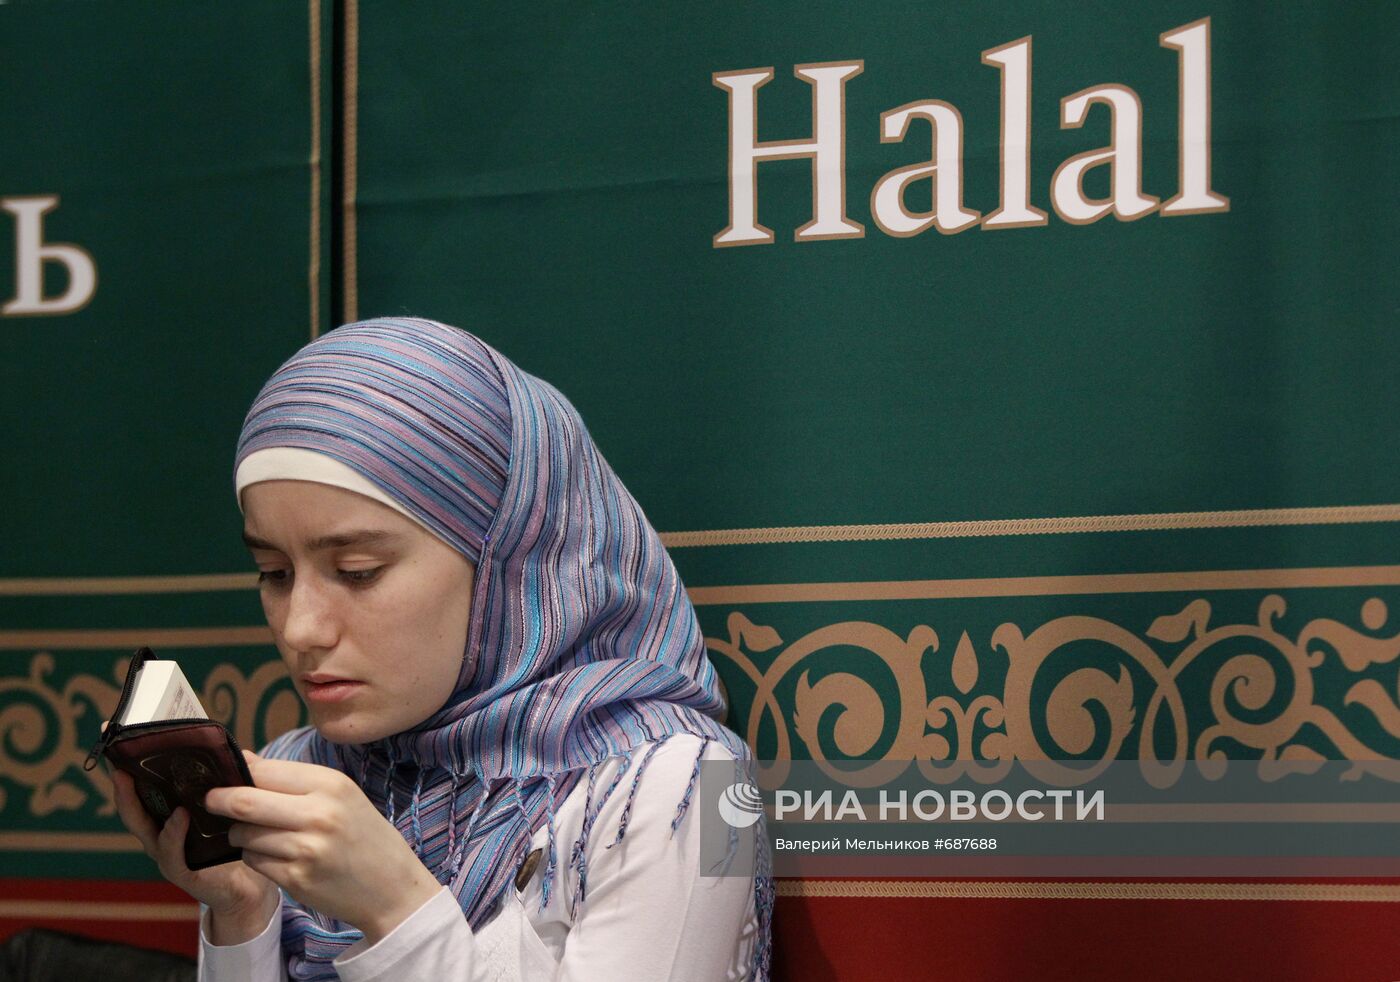 Молодая мусульманка на выставке Халяль